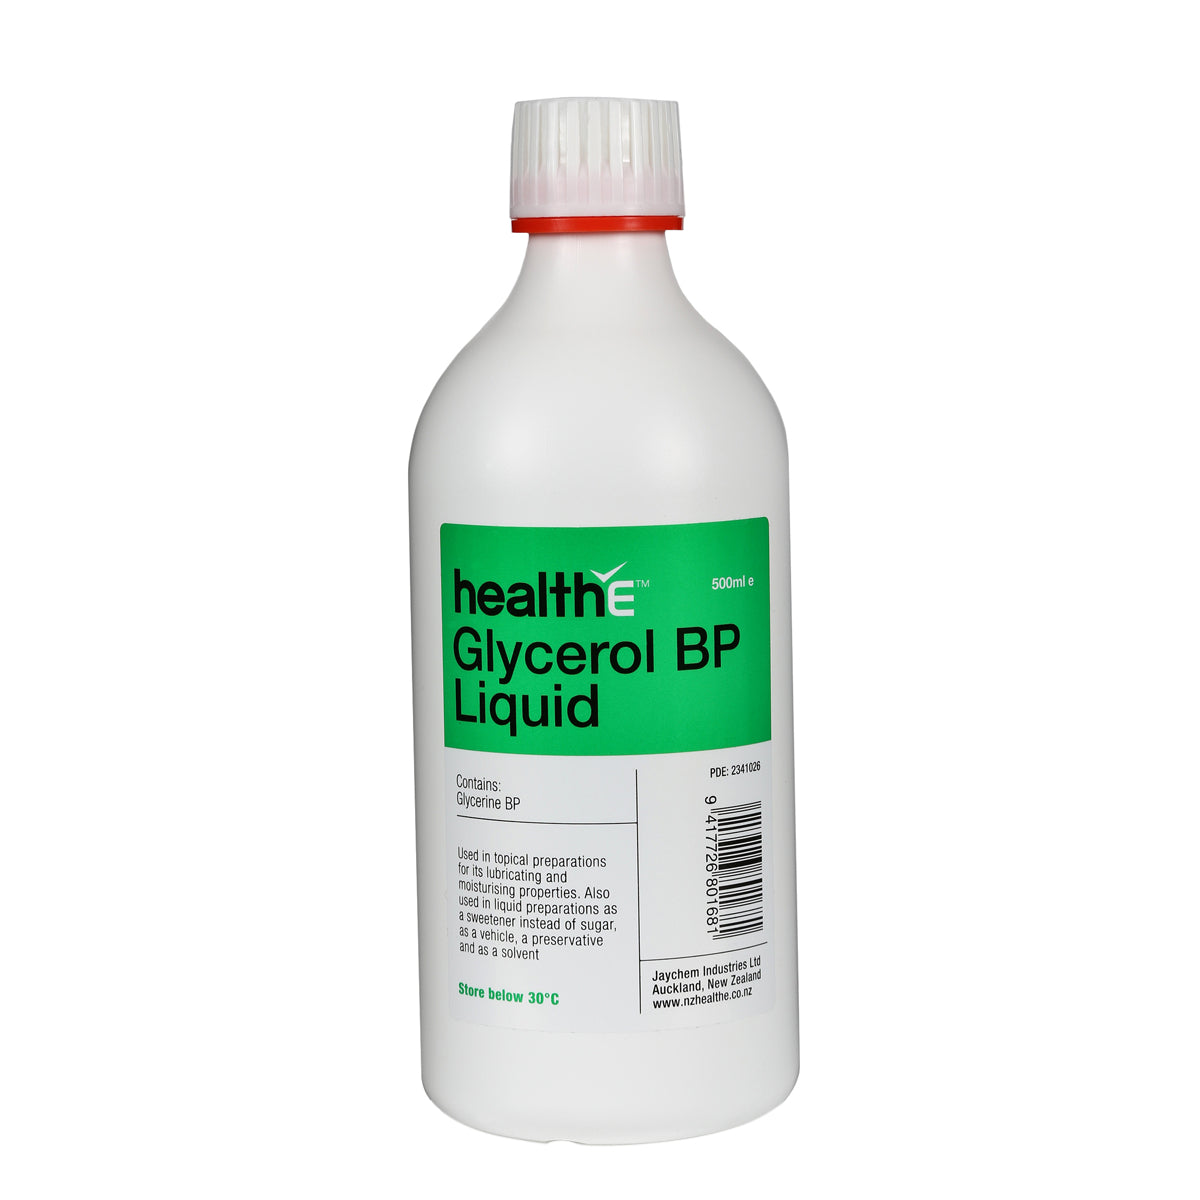 healthE Glycerol BP Liquid